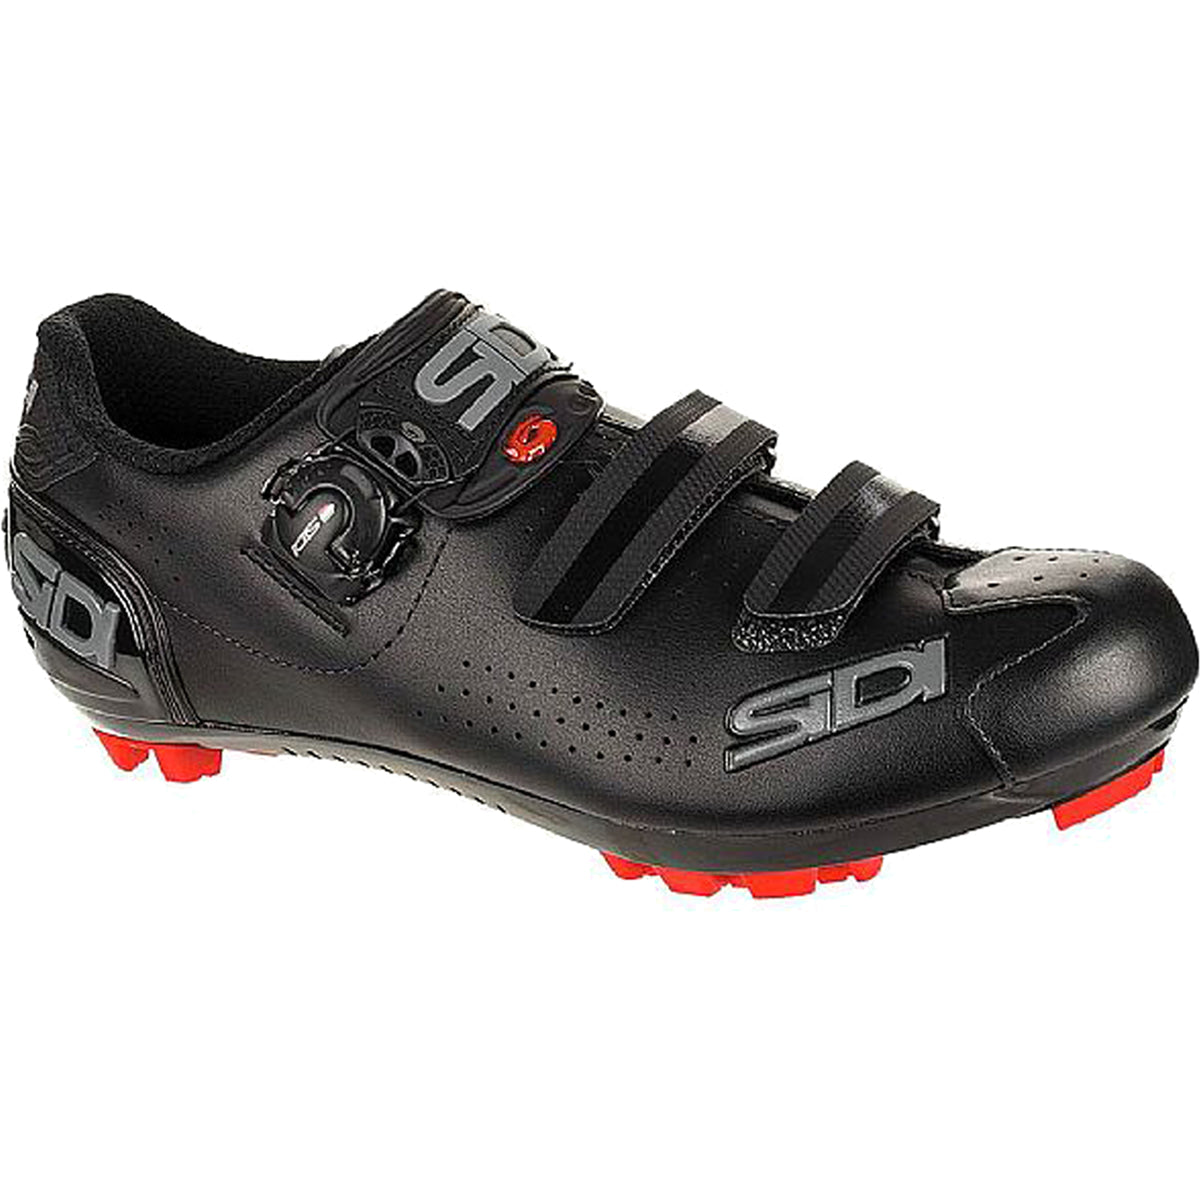 Sidi Trace 2 MEGA Mountain Bike Shoes - Black/Black